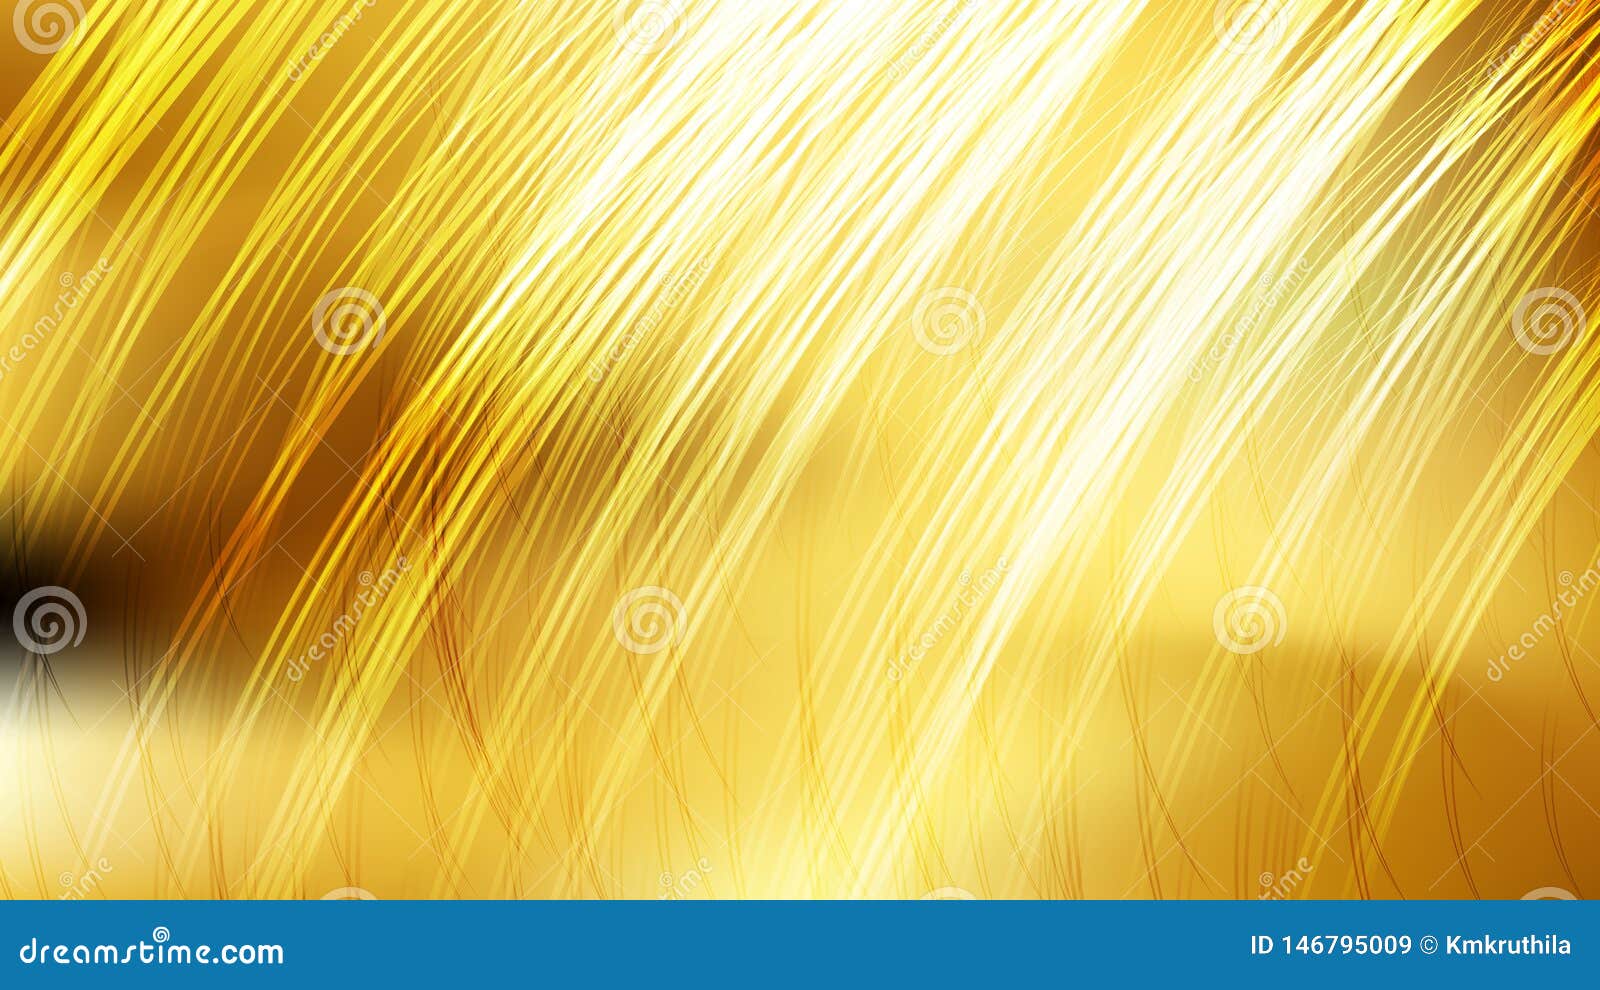 Ilustración de Fondo Amarillo De Papel Dorado Diseño Decorativo De Lujo Elegante  Fondo Dorado Metálico Fondo De Textura De Lámina De Oro De Hoja Amarilla  Brillante y más Vectores Libres de Derechos